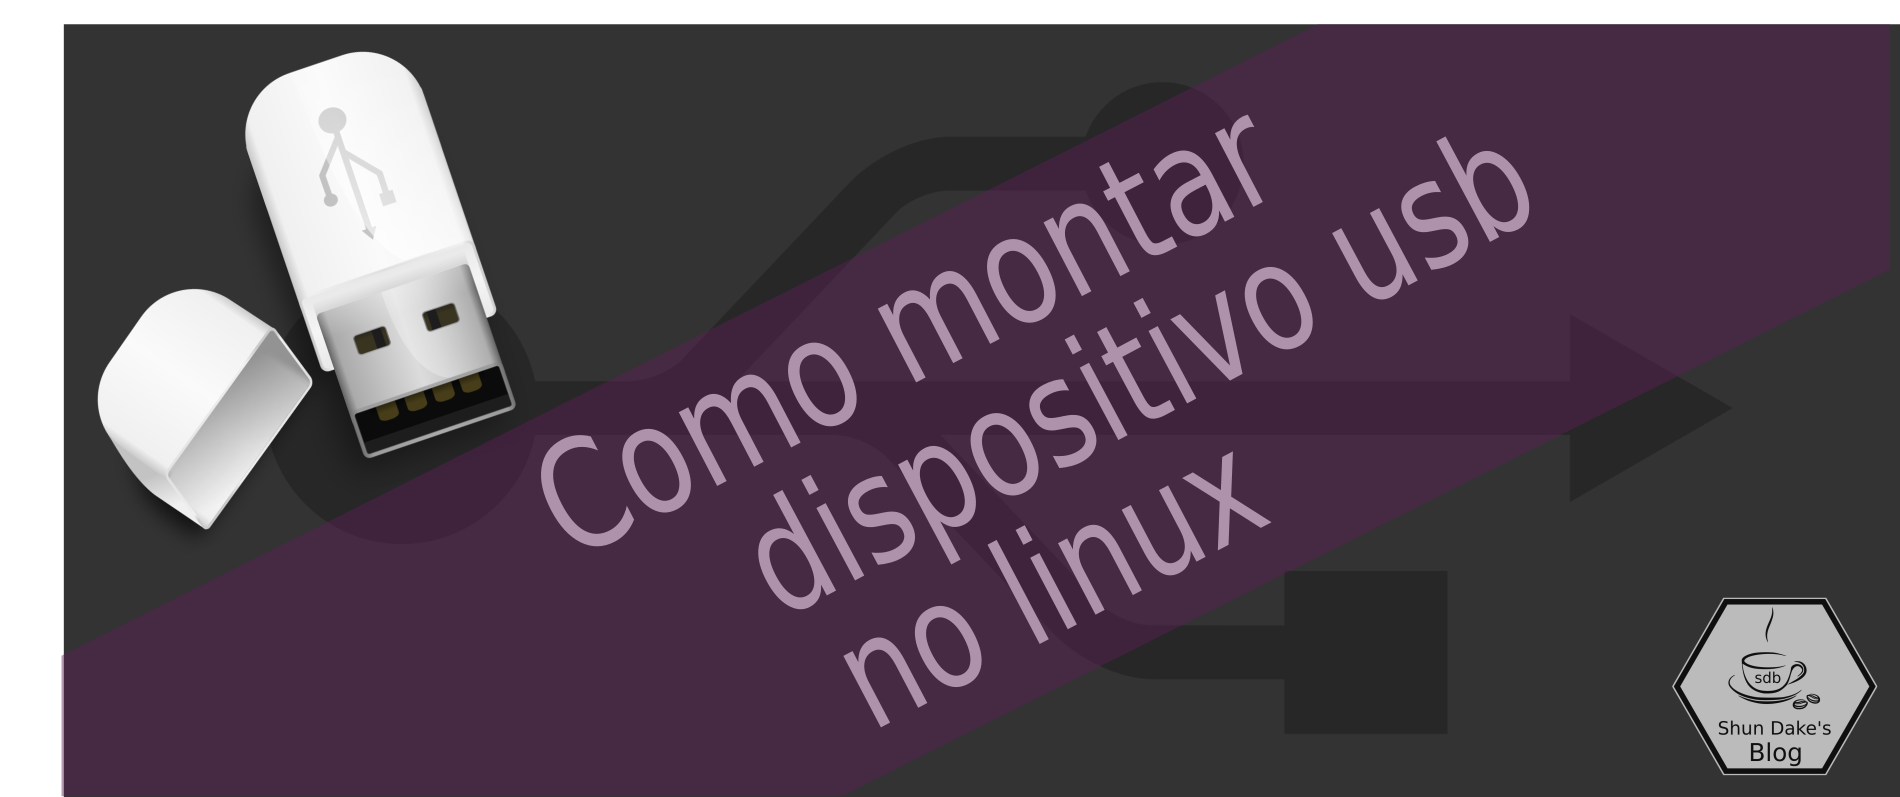 Montar manualmente usb no linux